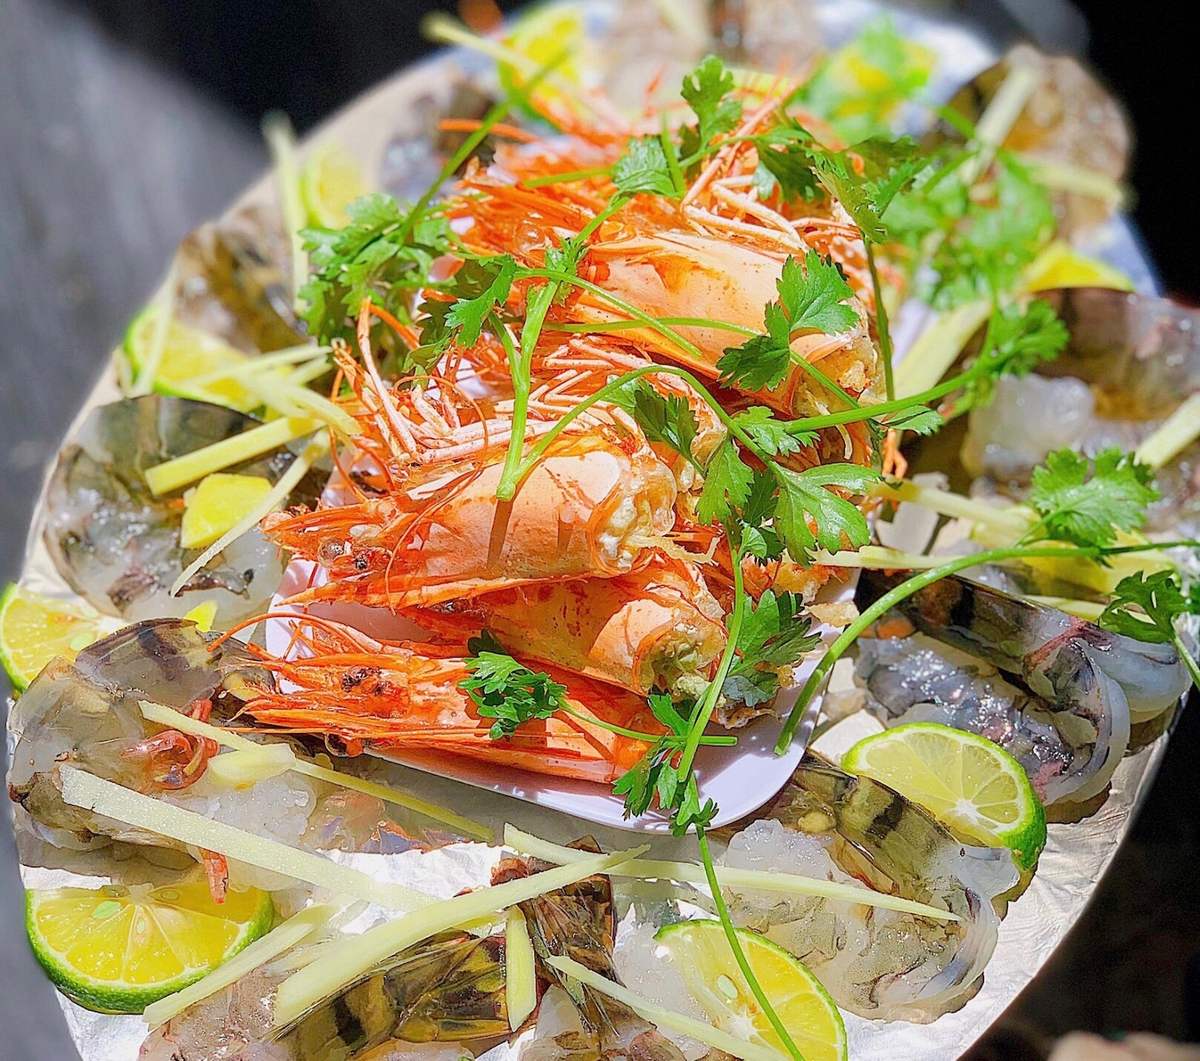 Nhà hàng Quang Anh - Vua cua Ô Loan Phú Yên với các món hải sản thơm ngon, 10